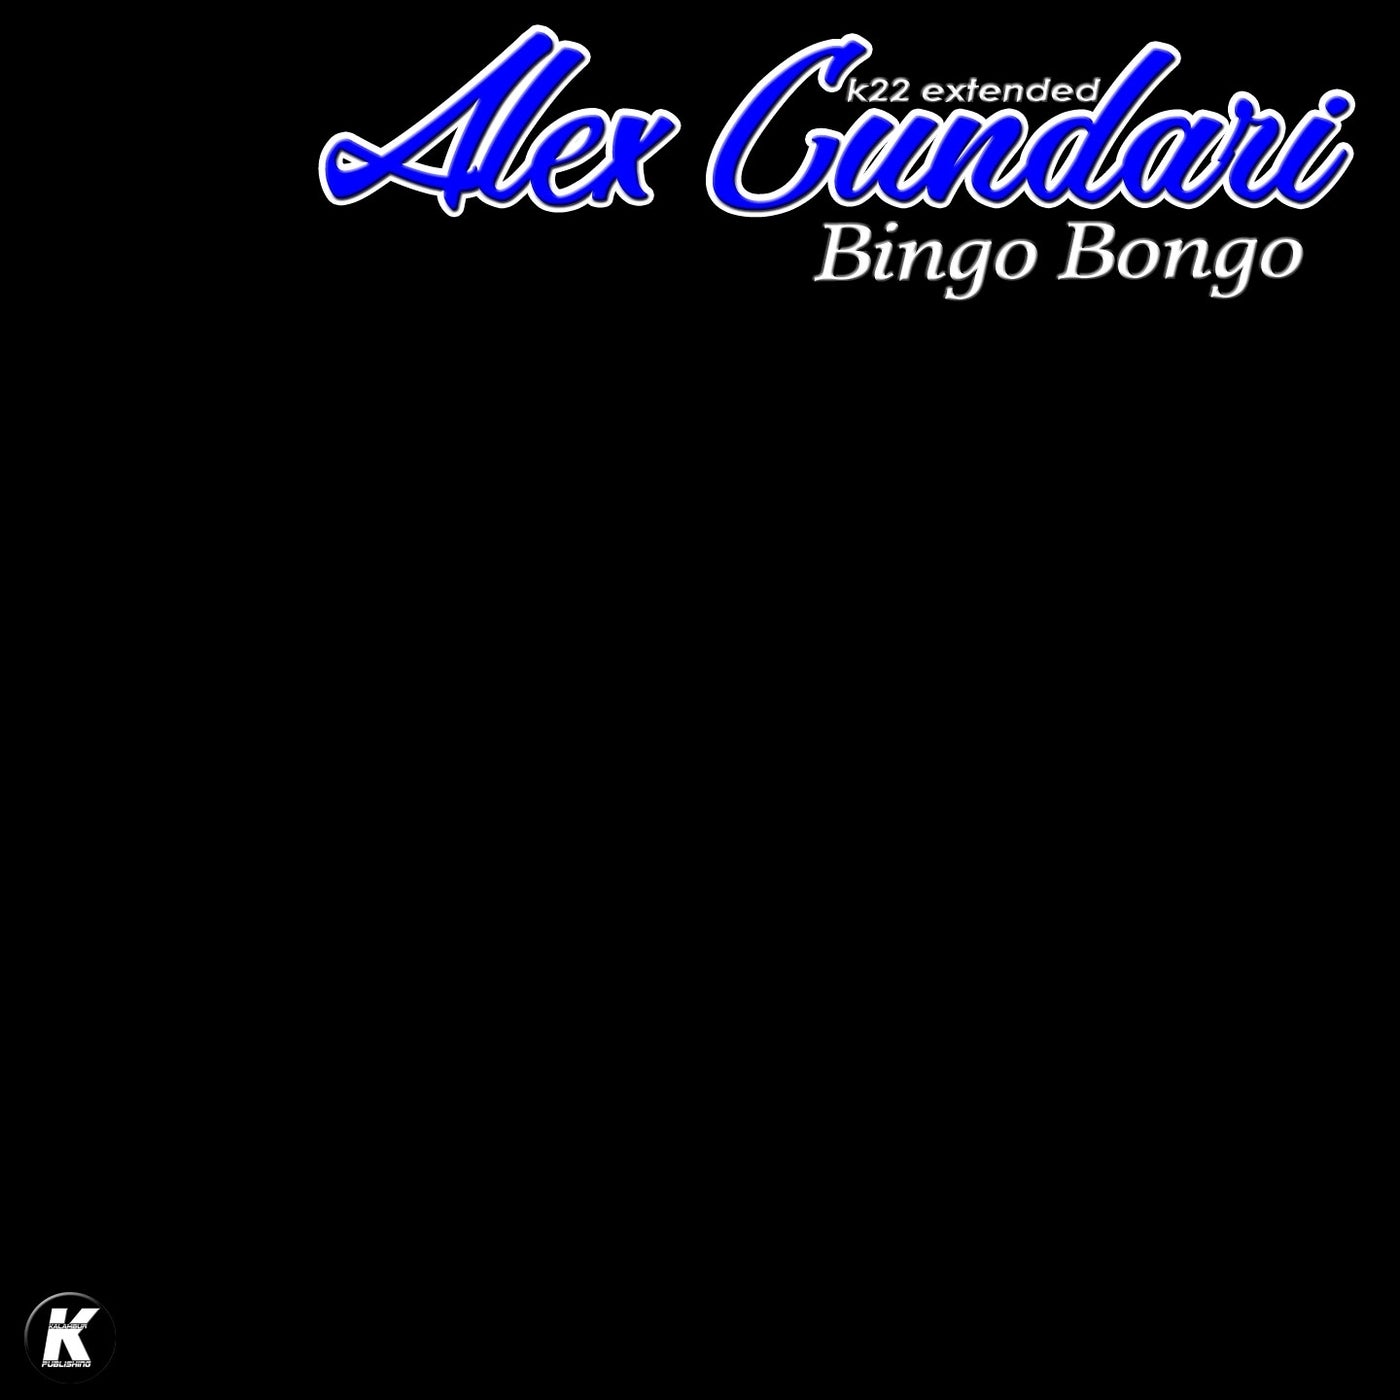 BINGO BONGO (K22 extended)